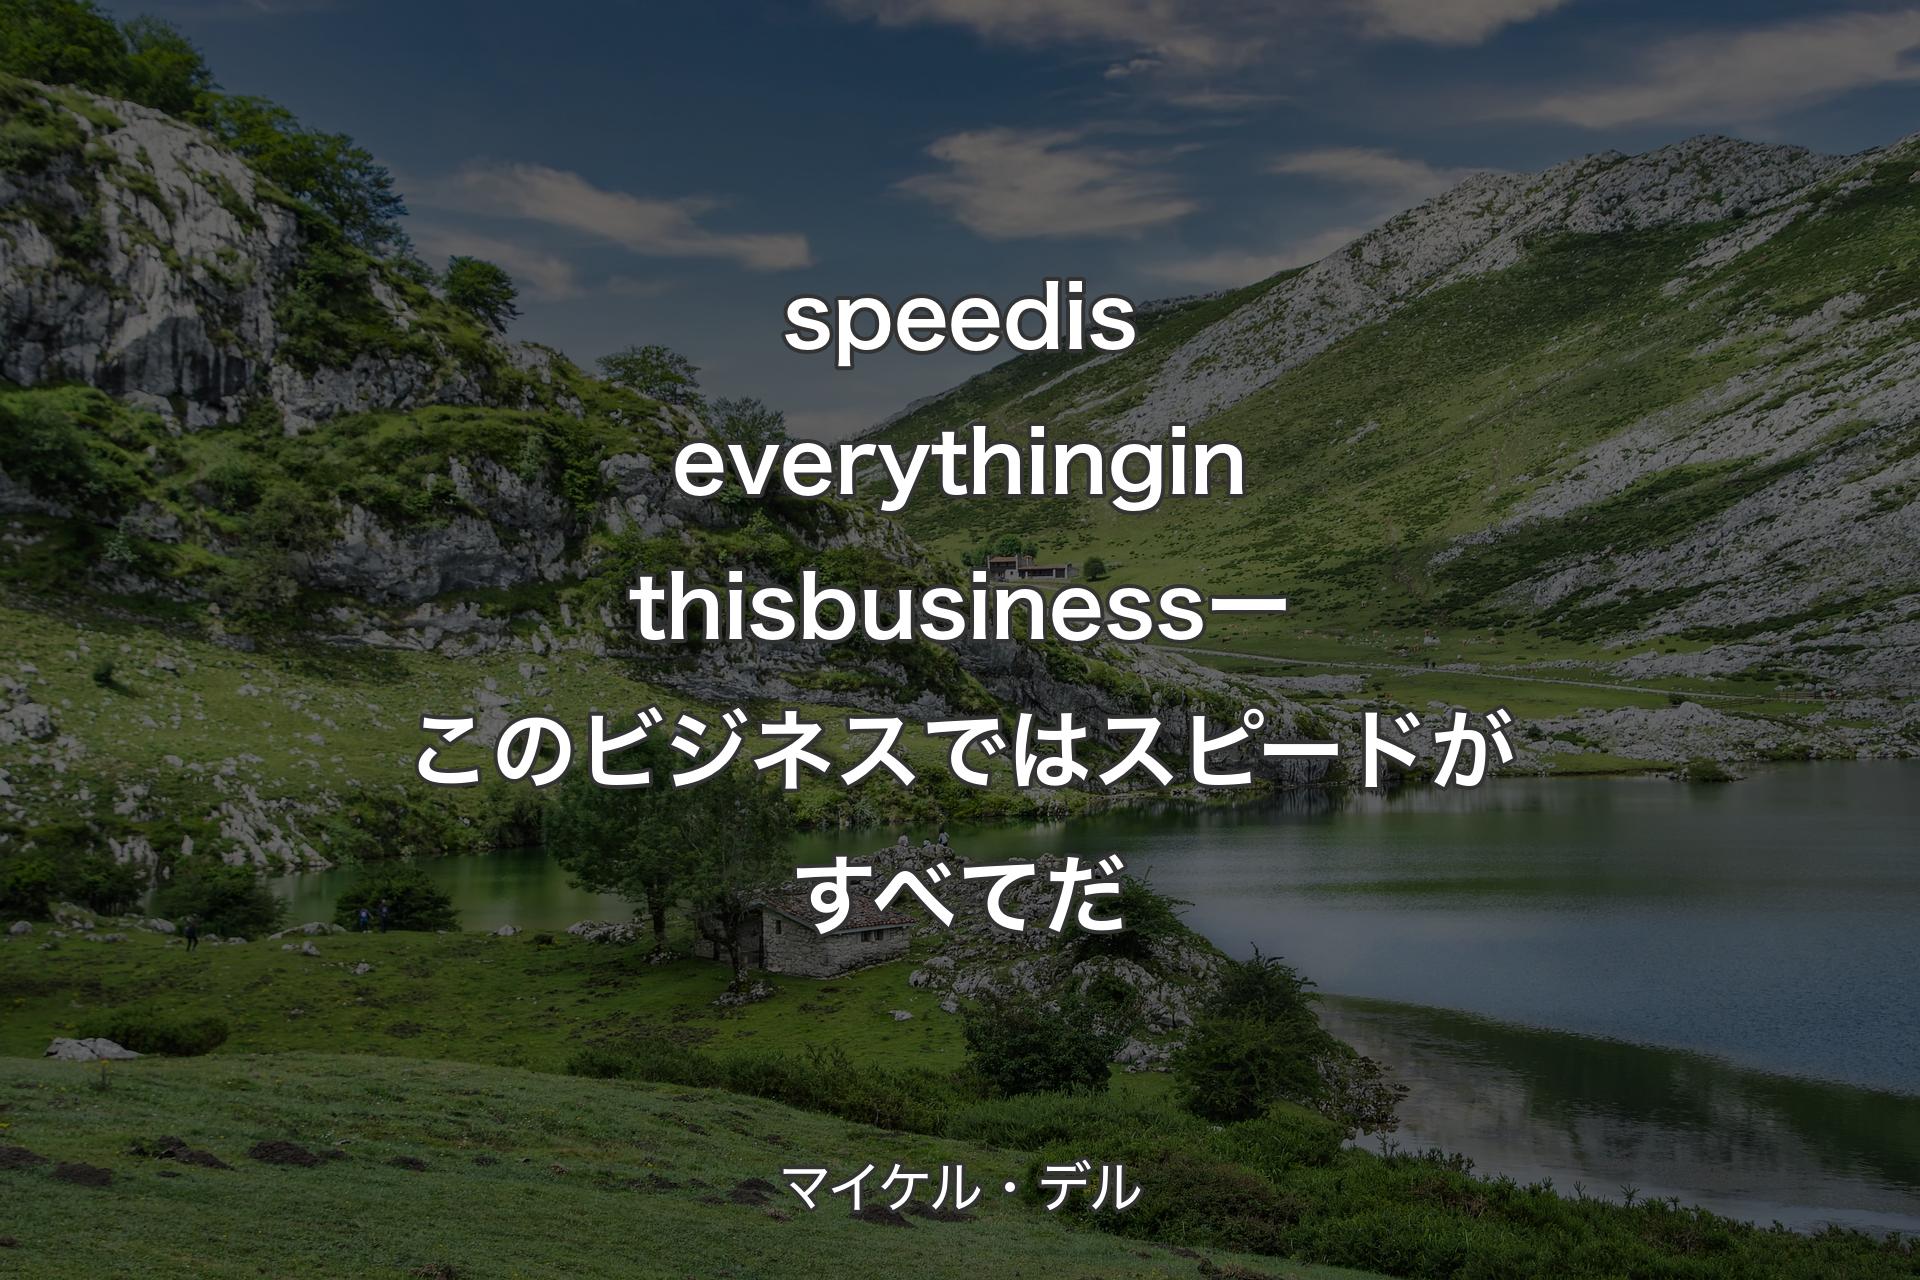 【背景1】speed is everything in this business ー このビジネスではスピードがすべてだ - マイケル・デル